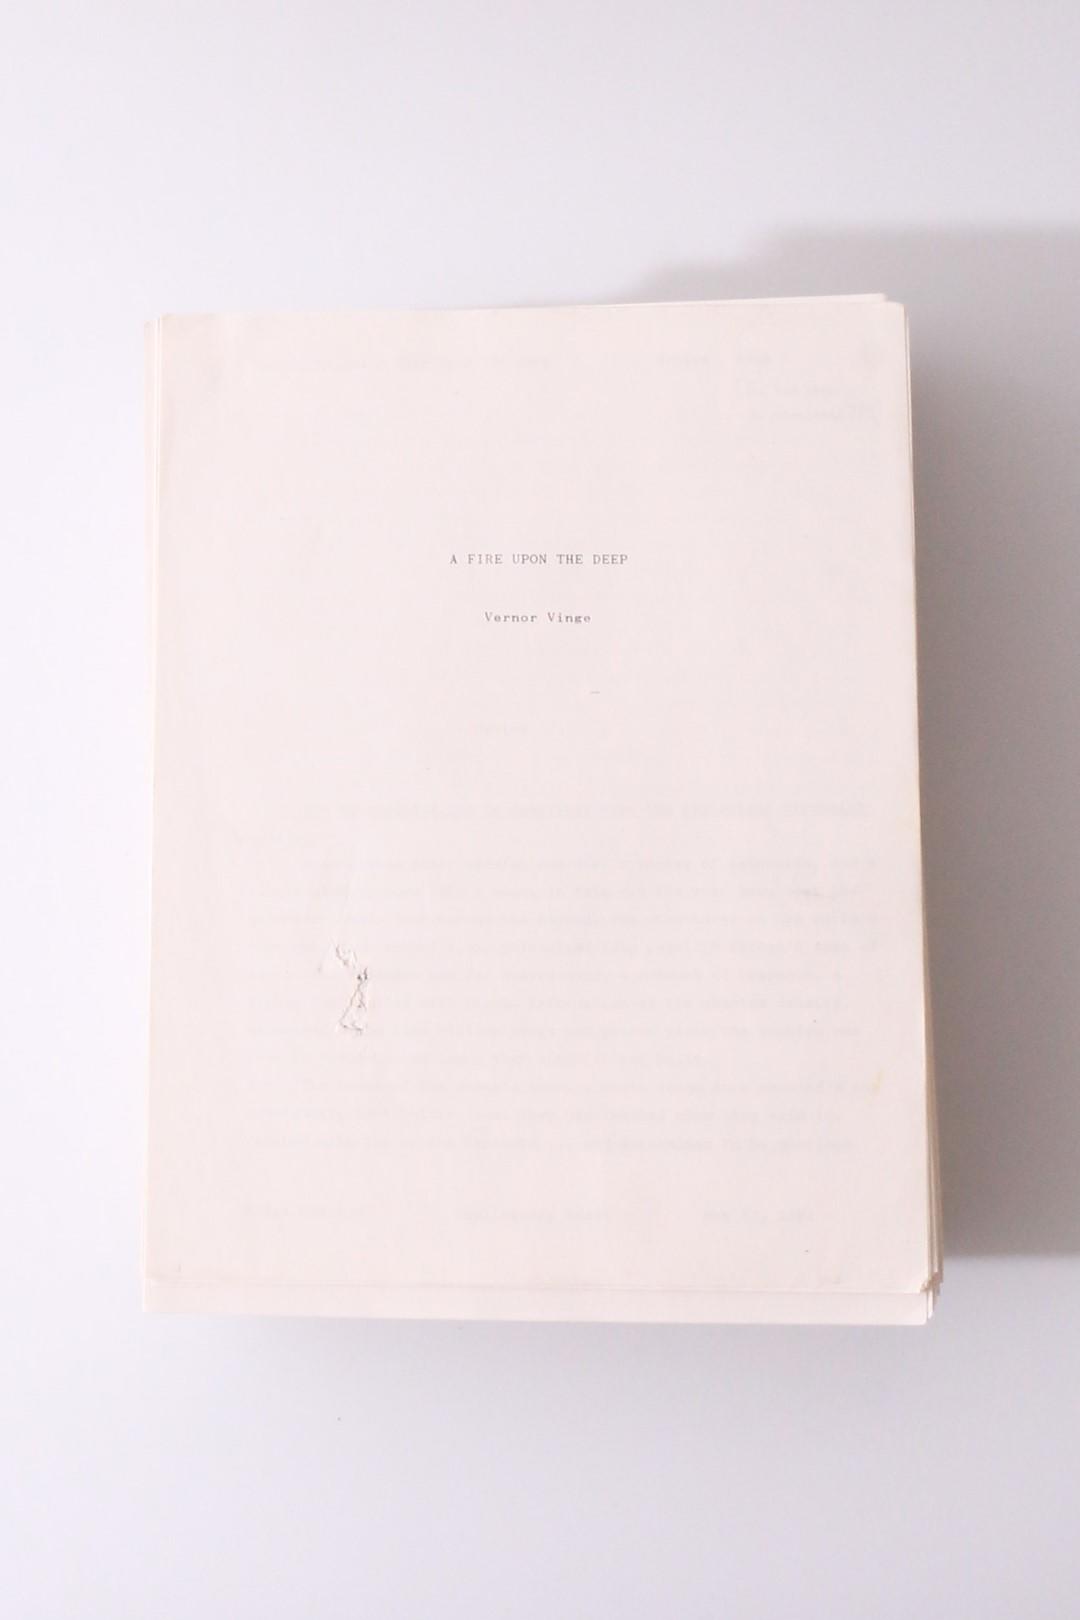 Vernor Vinge - A Fire Upon the Deep - A Manuscript - Tor, 1991, Manuscript.